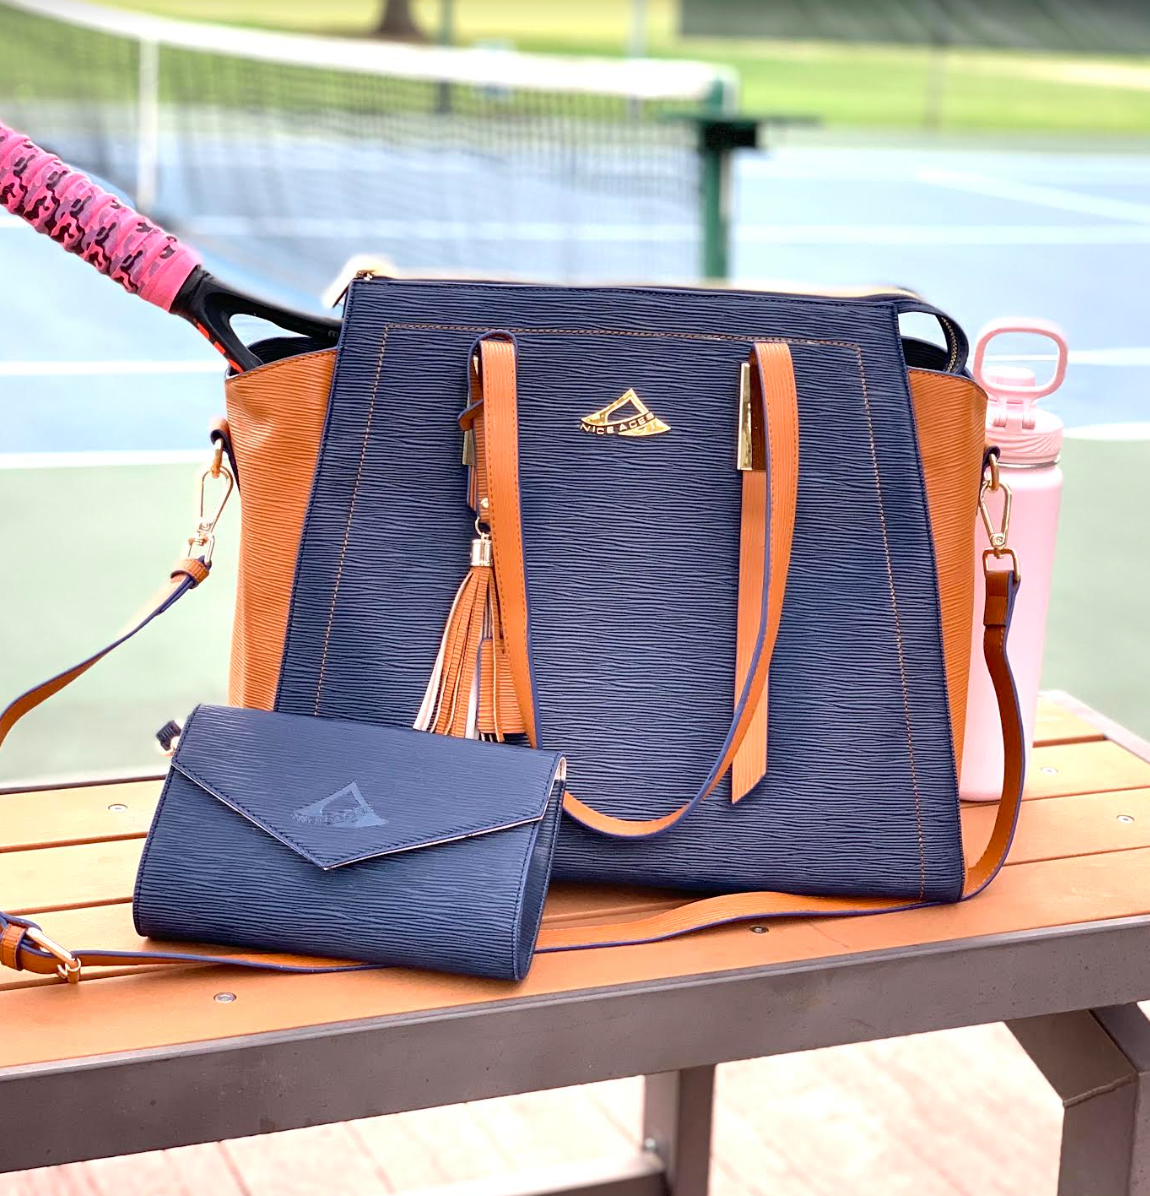 NiceAces Bala Tennis, Pickleball & Laptop Bag (Brown)